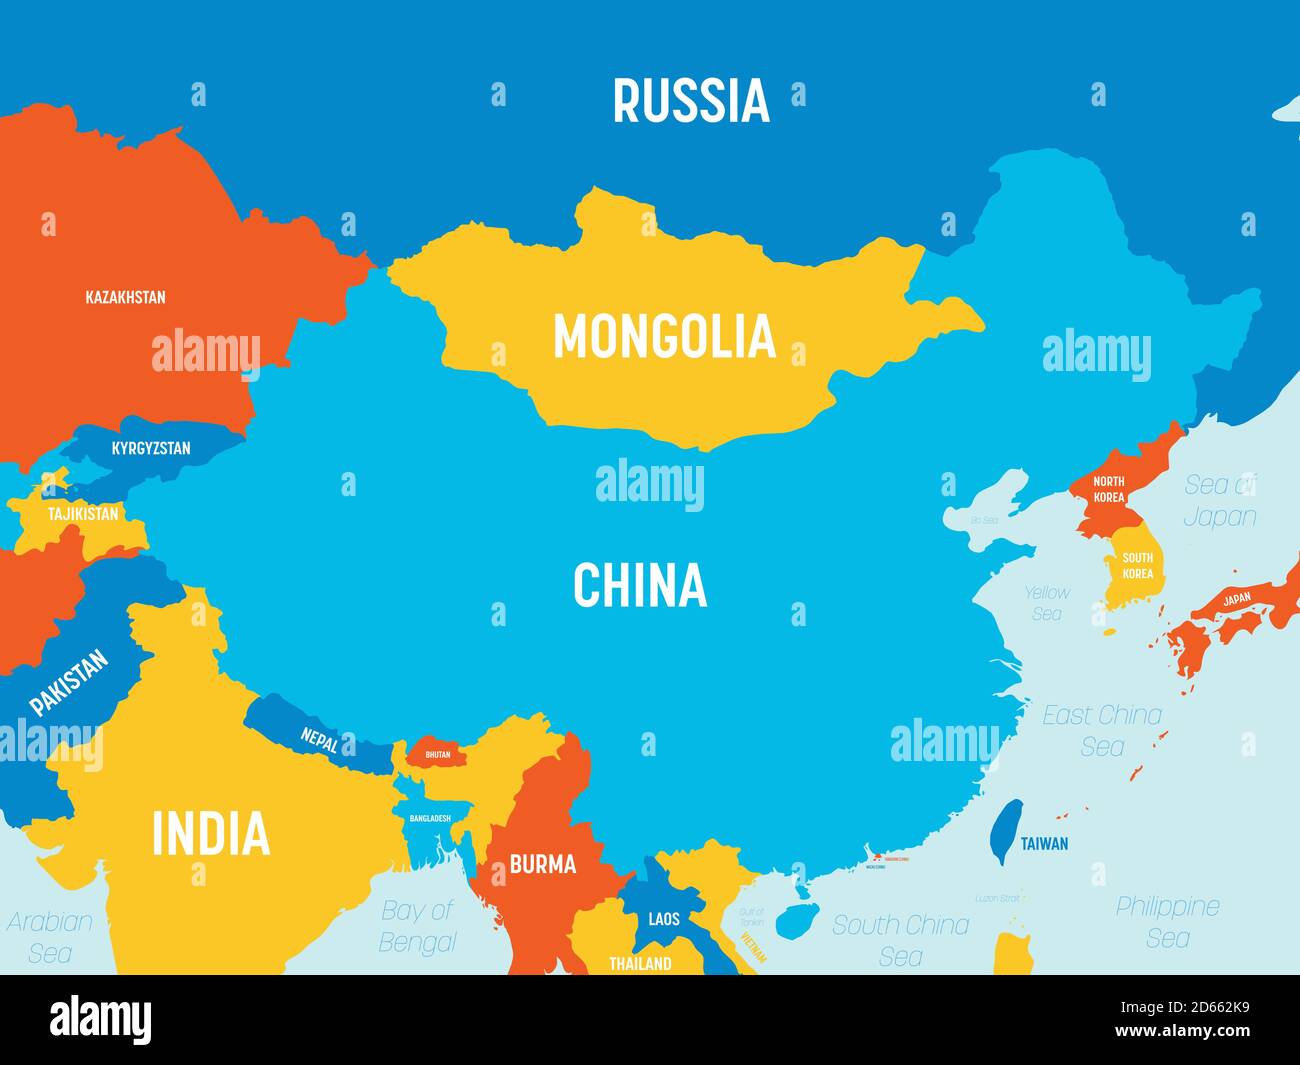 Carte de la Chine - 4 couleurs vives. Carte politique détaillée de la Chine et des pays voisins avec étiquetage des noms de pays, d'océan et de mer. Illustration de Vecteur